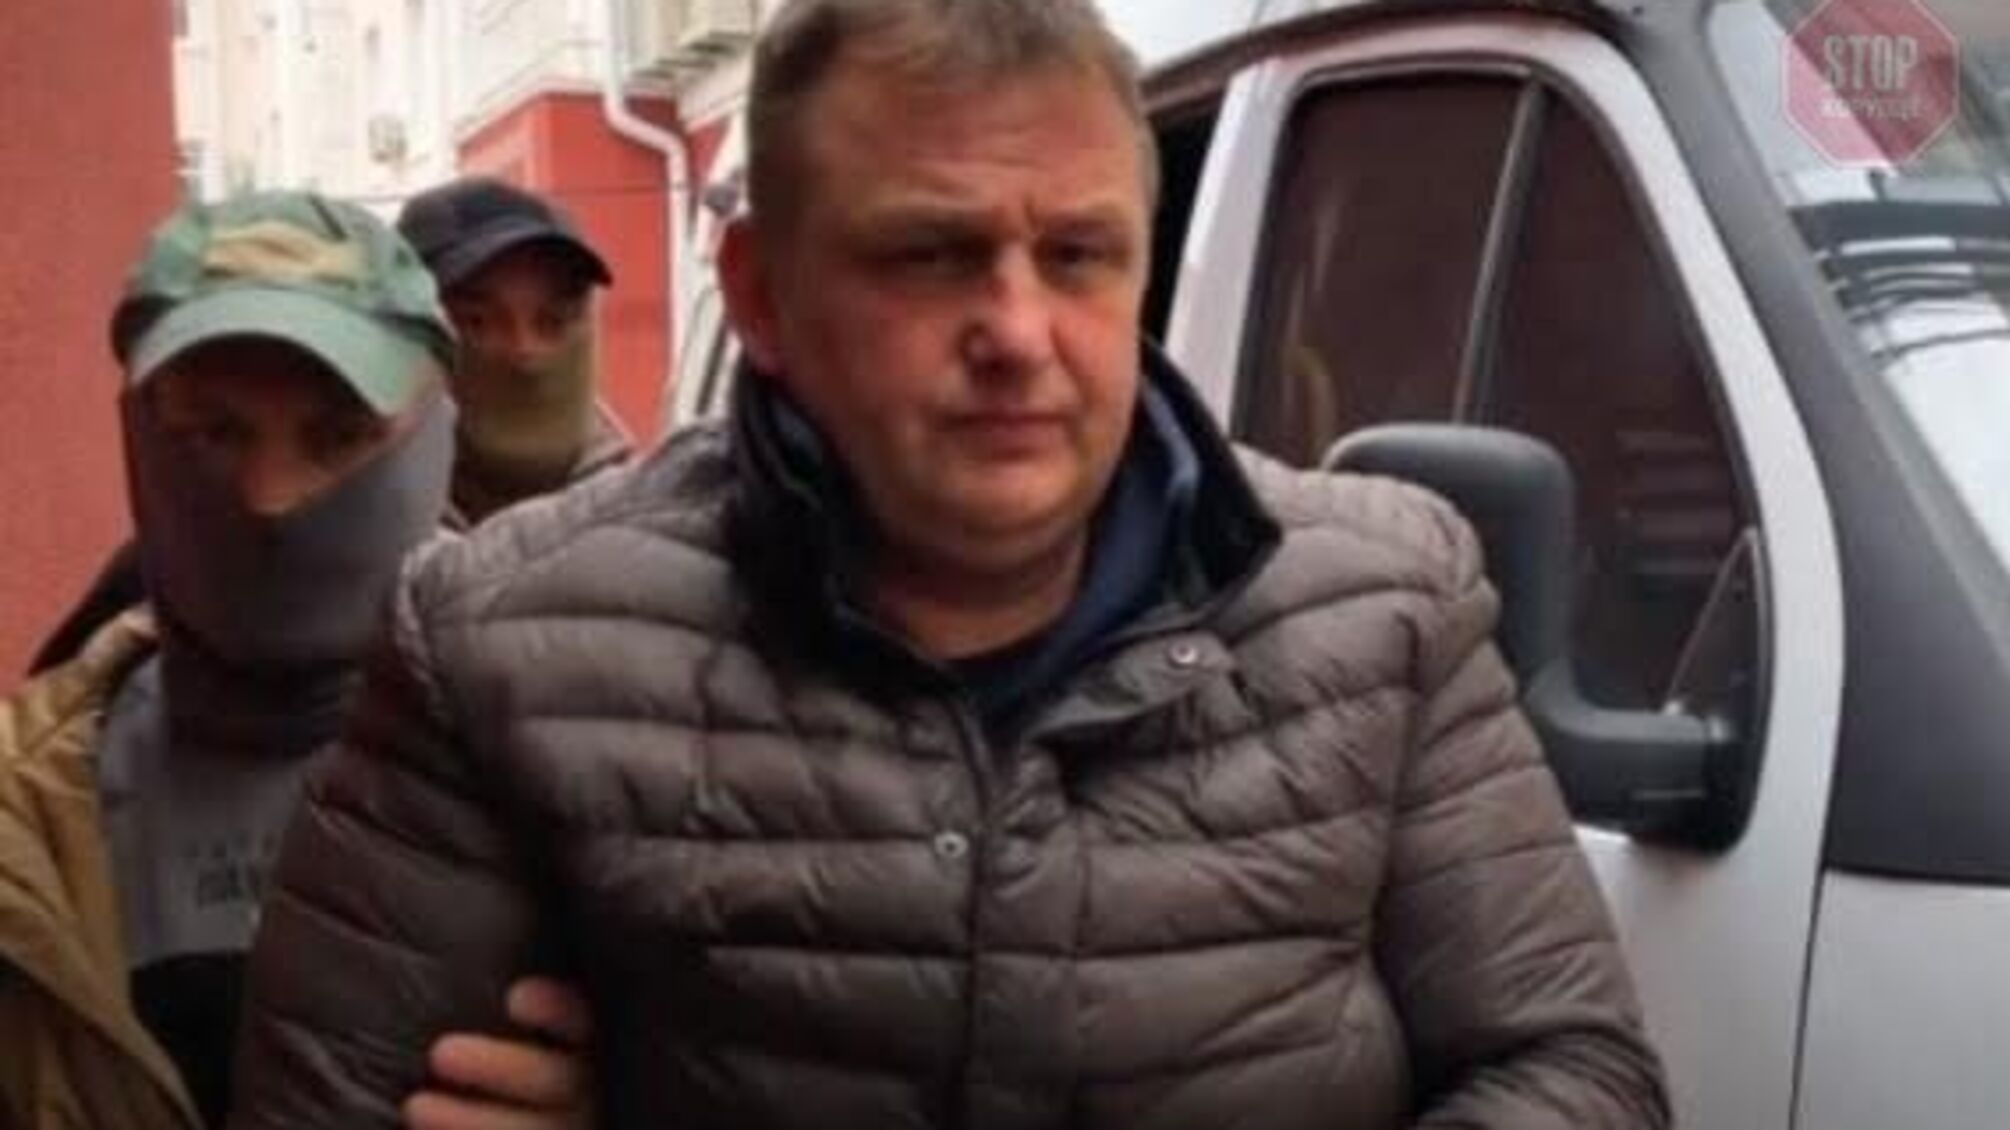 ЗМІ: Затриманого в окупованому Криму журналіста “Радіо Свободи” Єсипенка ФСБ катувала струмом 